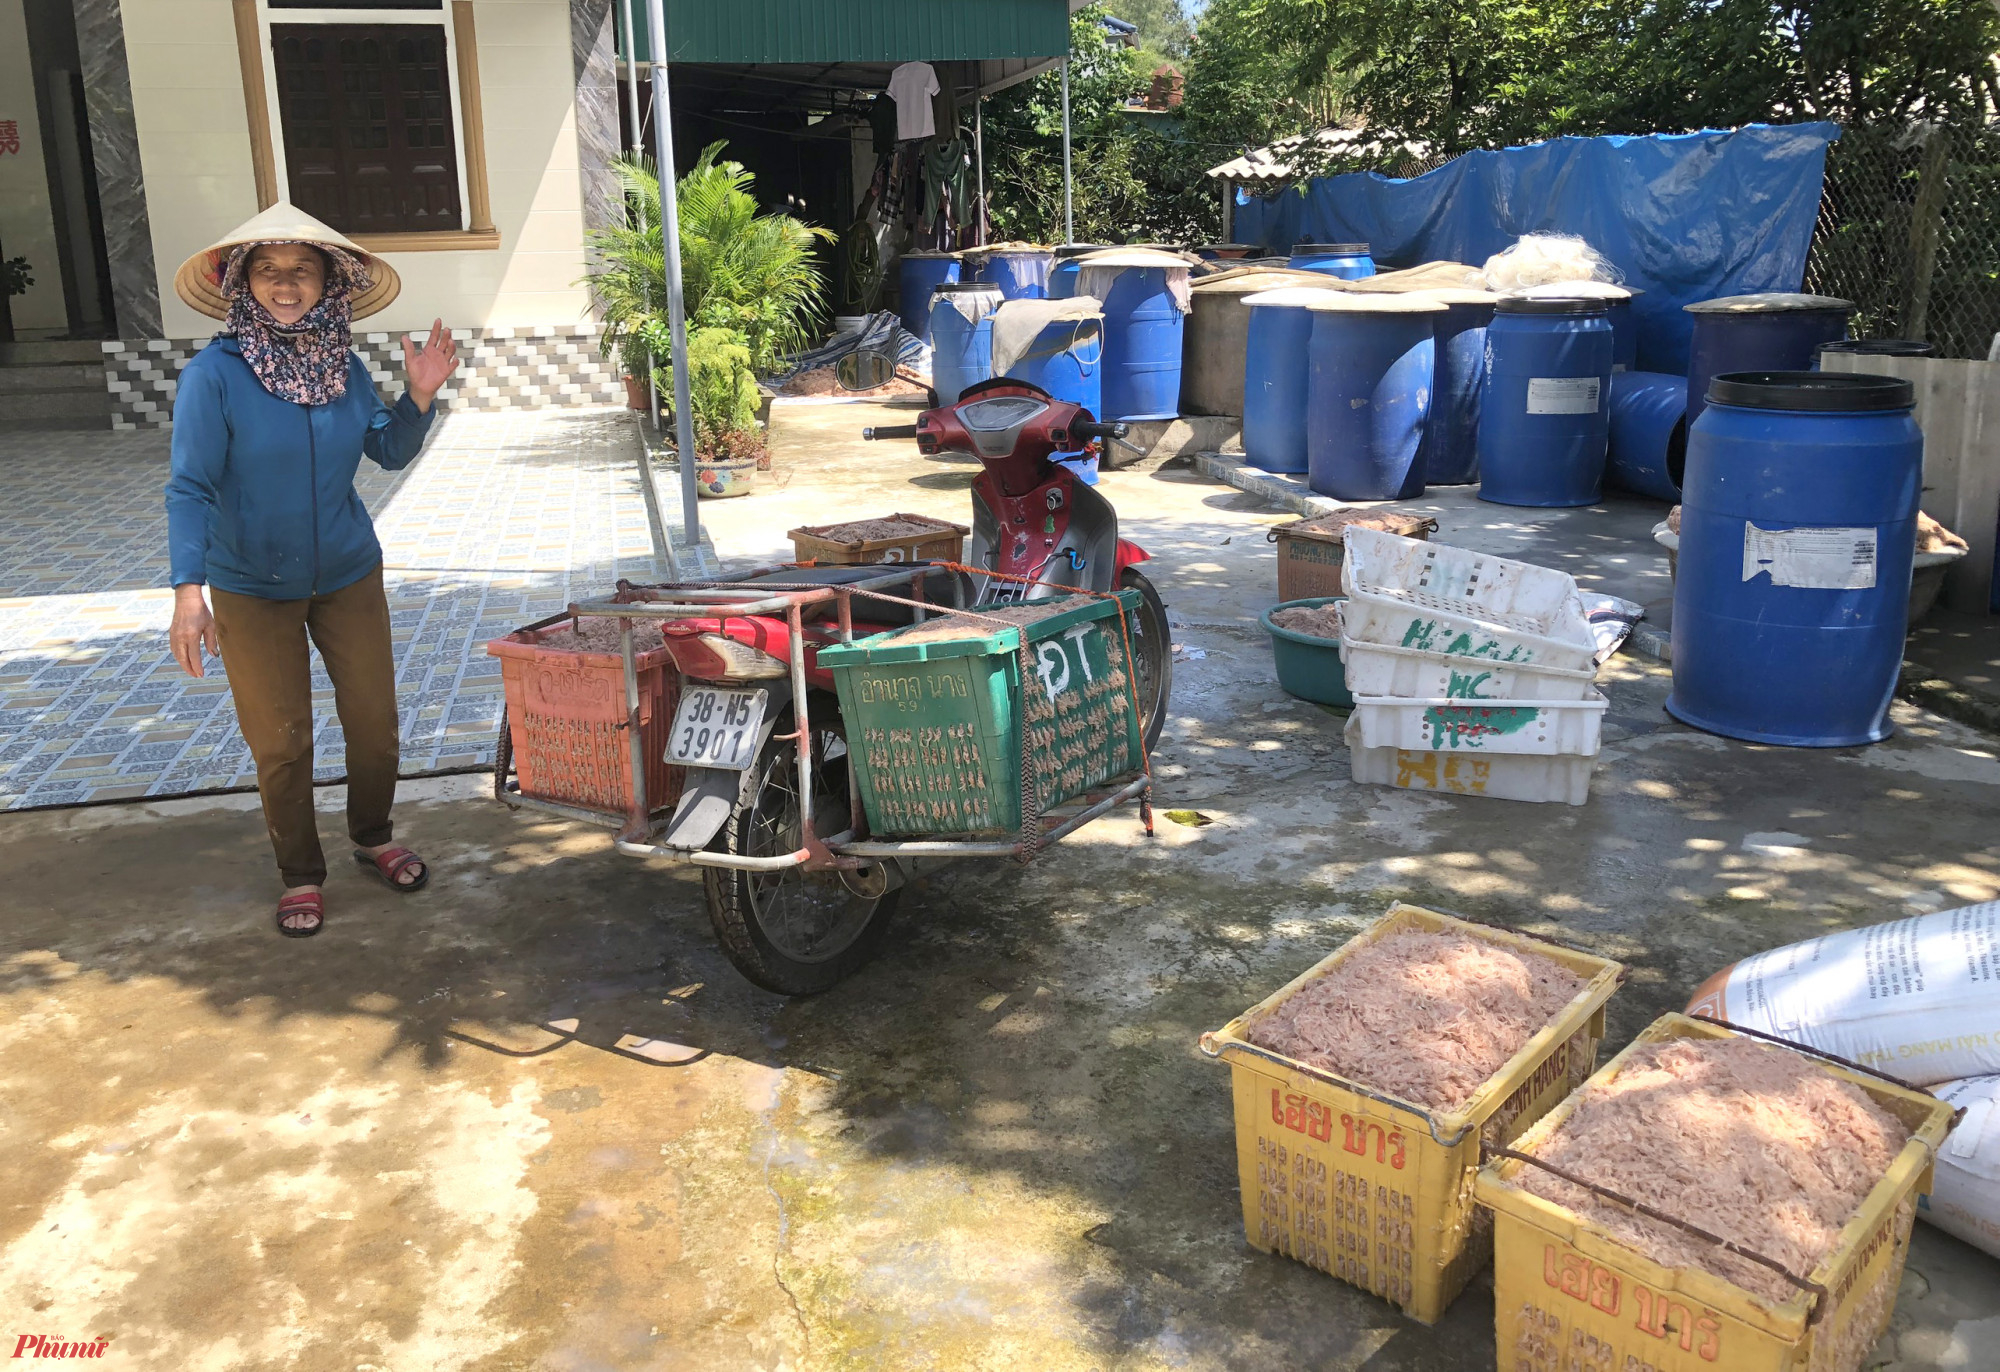 Bà Nguyễn Thị Bưởi (thôn Nam Hải) cho biết, gia đình bà có cơ sở thu mua, chế biến hải sản tại địa phương. Mấy hôm nay bà ra tận bờ biển chờ để thu mua tép ngư dân vừa đánh bắt xong, chỉ riêng trong sáng 6/10, bà đã mua hơn 1 tấn tép.